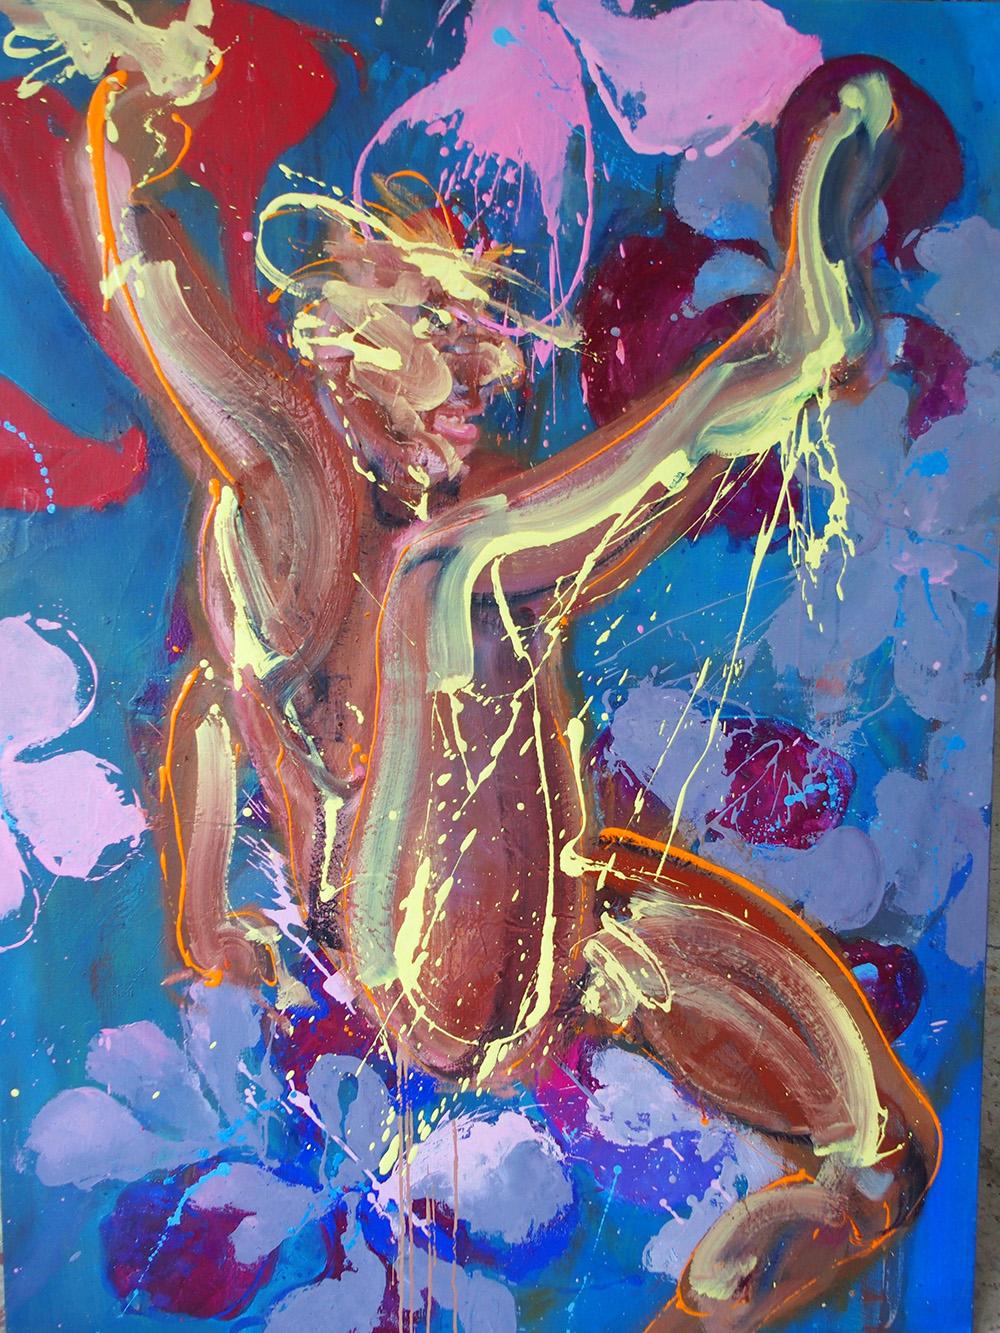 K ist ein einzigartiges Gemälde in Öl auf Leinwand des zeitgenössischen Künstlers Christophe Dupety mit den Maßen 146 × 114 cm (57,5 × 44,9 in).
Das Kunstwerk ist signiert, wird ungerahmt verkauft und wird mit einem Echtheitszertifikat